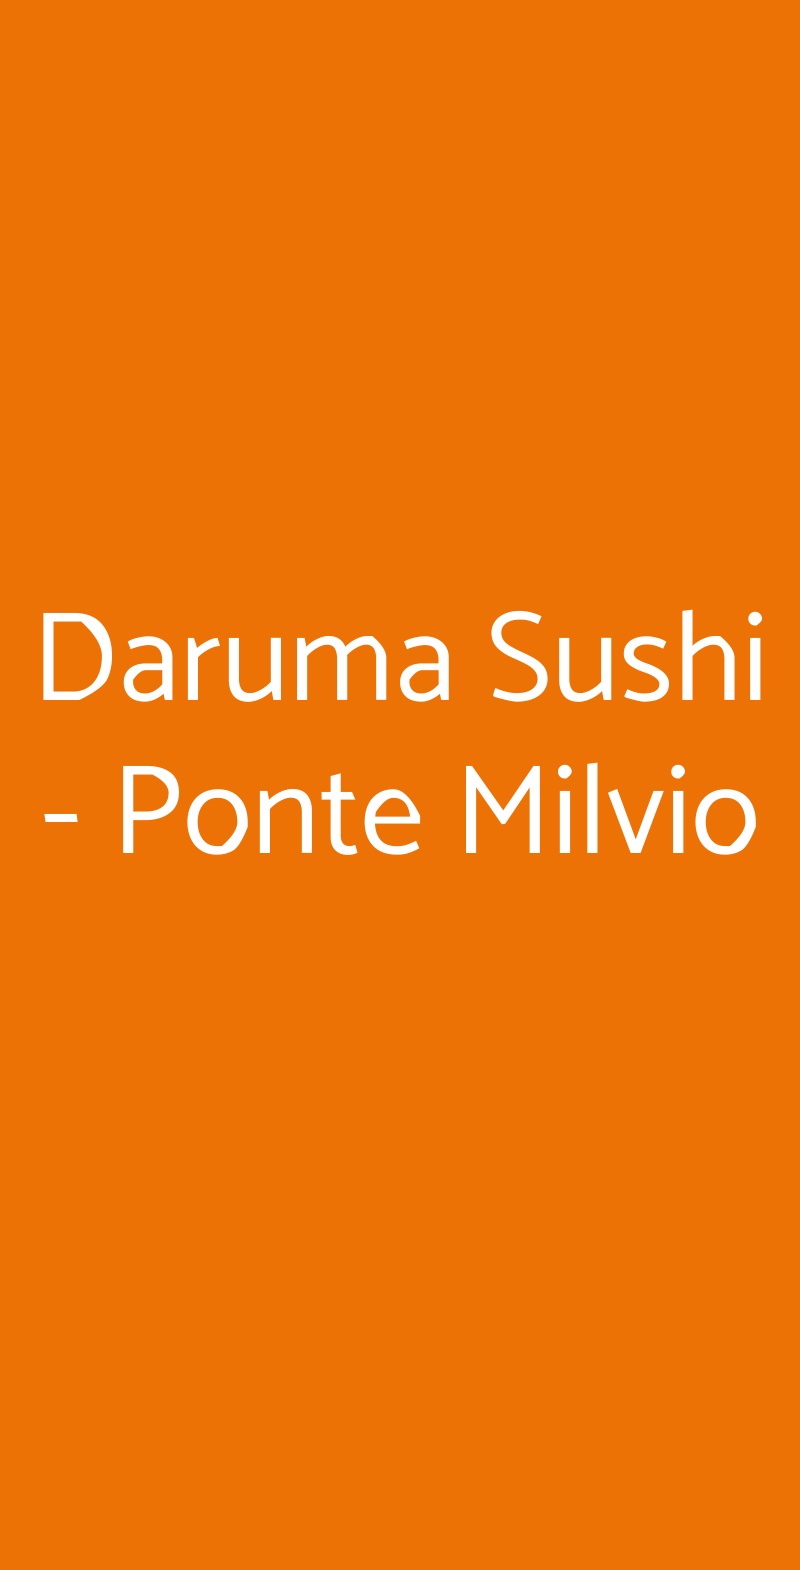 Daruma Ristorante & Take Away - Ponte Milvio Roma menù 1 pagina